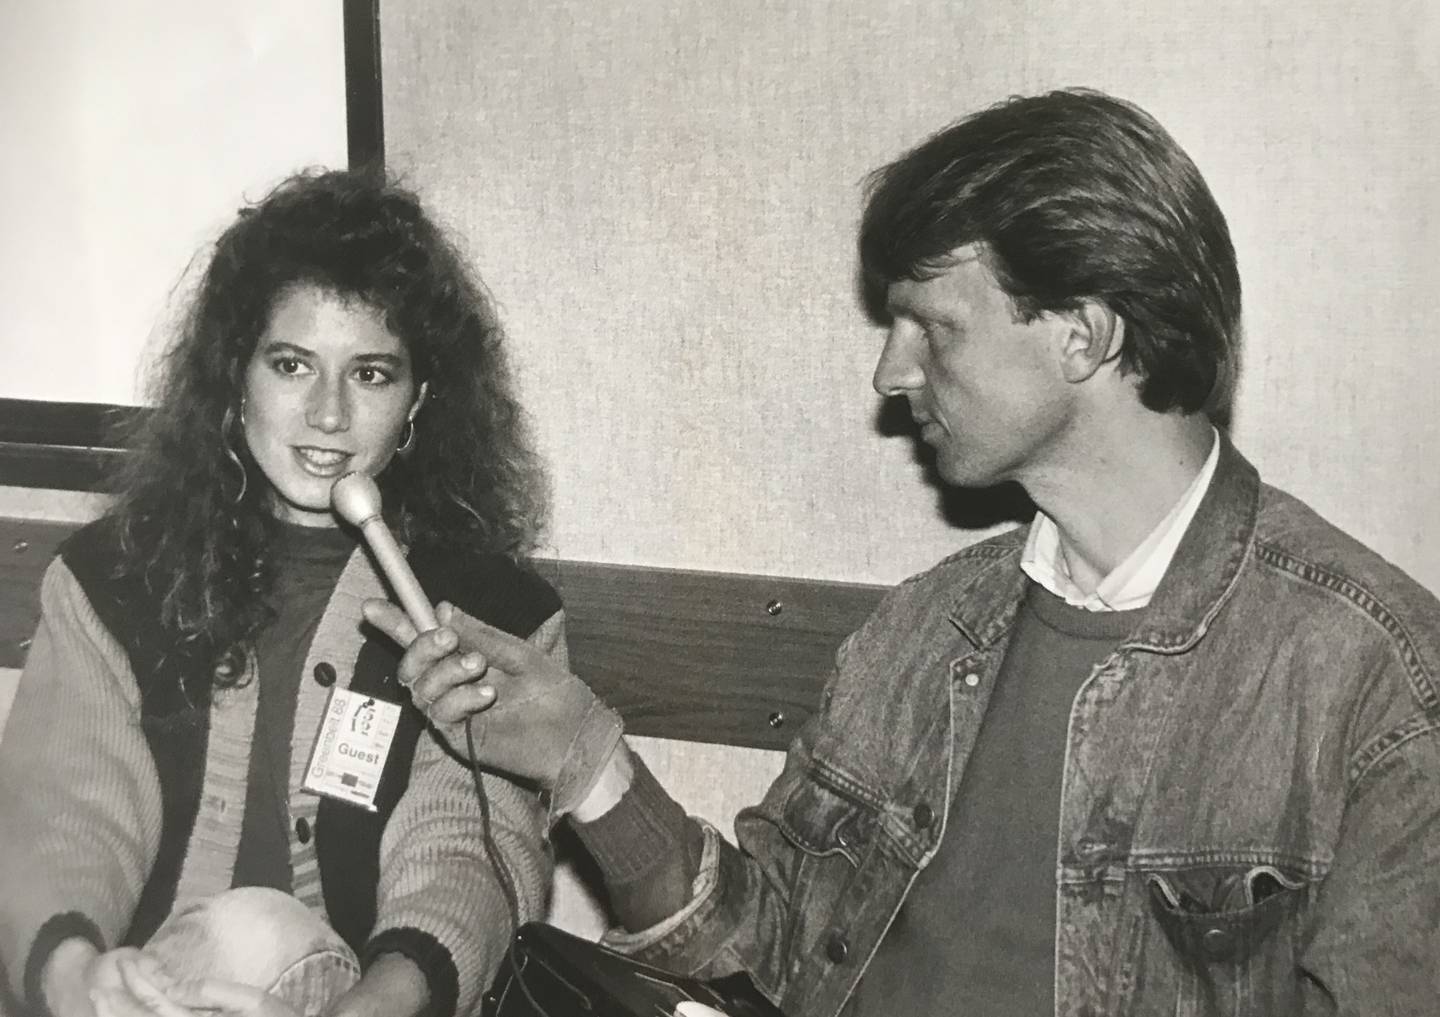 Jeg intervjuer Amy Grant på bak scenen på Greenbeltfestivalen i 1988. En plagsom vaktbikkje av en plateselskapsfyr er nettopp blitt jaget bort av av artisten, som på den tiden var verdens ubestridt mestselgende kristne artist. Snart fikk hun også et  stort marked utenfor den kristne musikken.